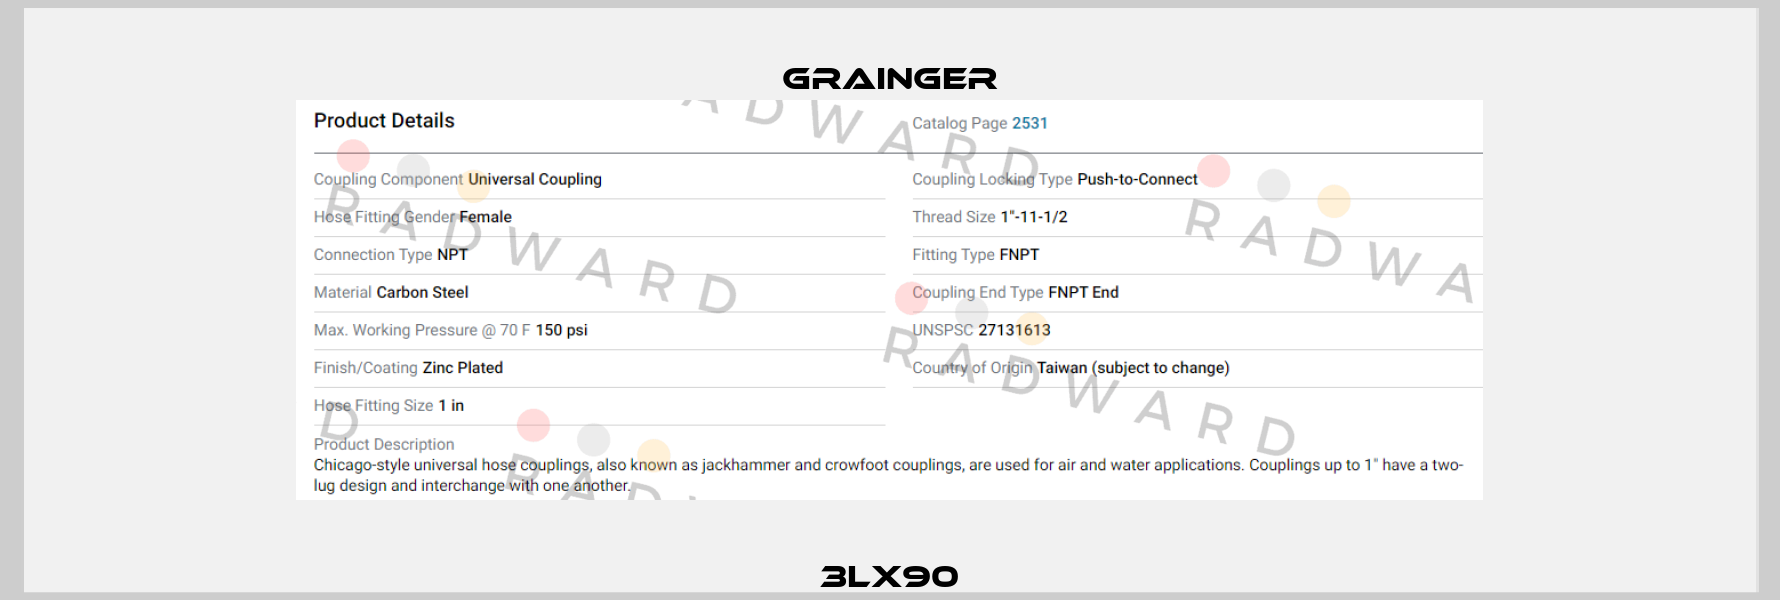 3LX90 Grainger